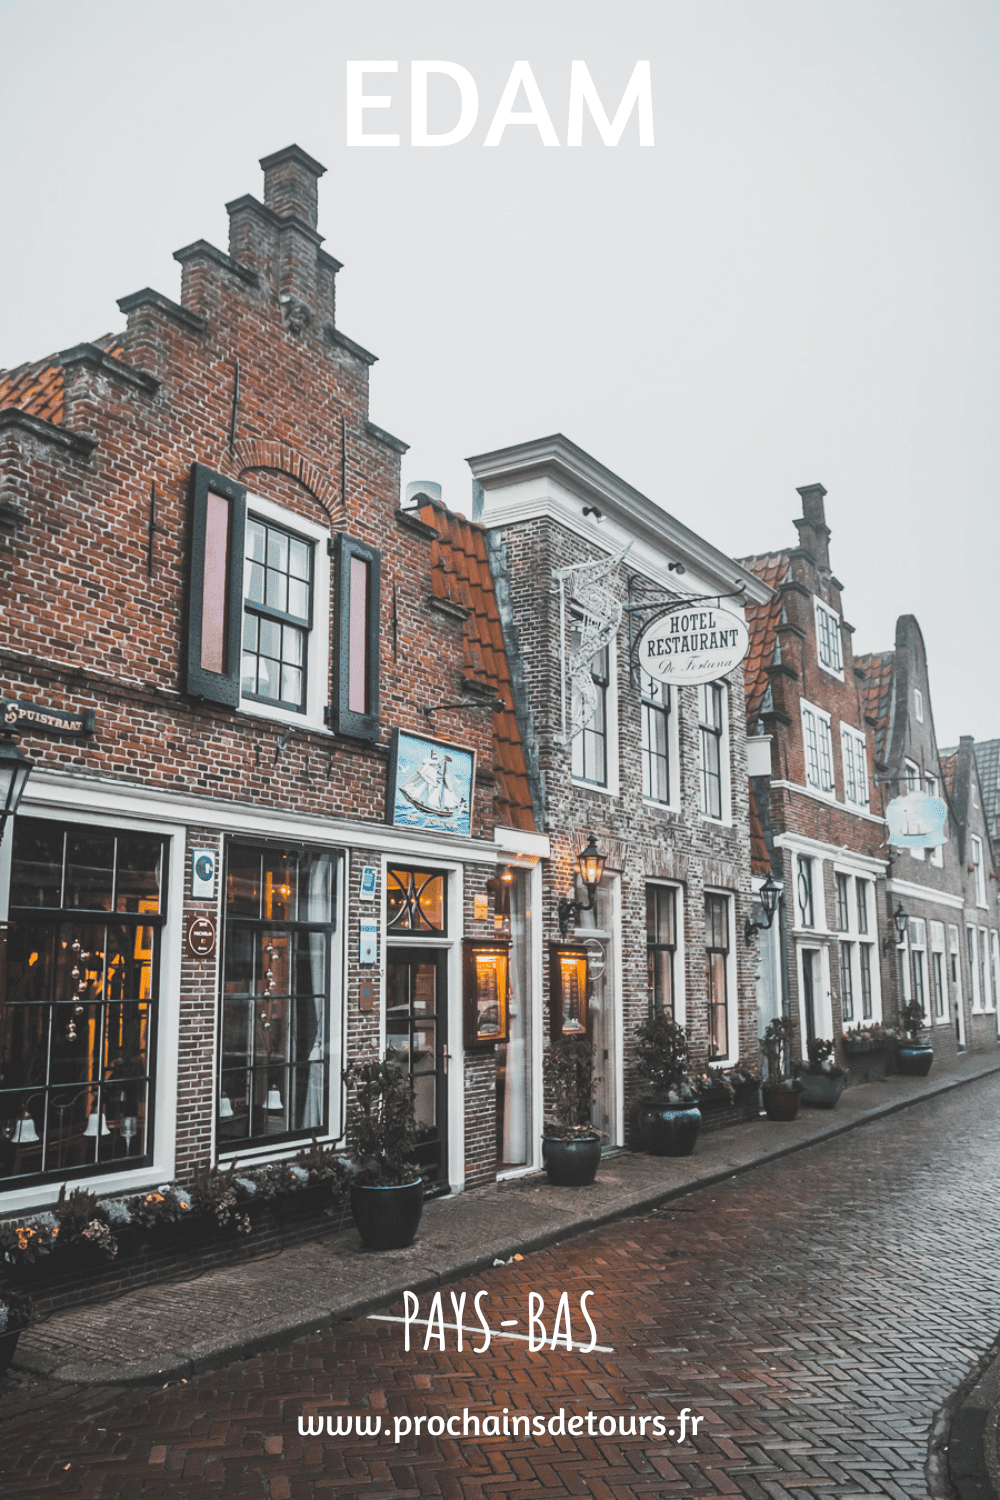 Edam est une ville pittoresque de la province de la Hollande du Nord aux Pays-Bas. Avec ses rues pavées, ses maisons hollandaises colorées et ses anciens canaux, Edam est une destination populaire pour les touristes. Que vous recherchiez une évasion paisible de l'agitation de la vie urbaine ou une expérience culturelle unique, Edam a quelque chose pour tout le monde. De sa riche histoire à son charme pittoresque, vous serez certainement enchanté par cette charmante ville hollandaise !